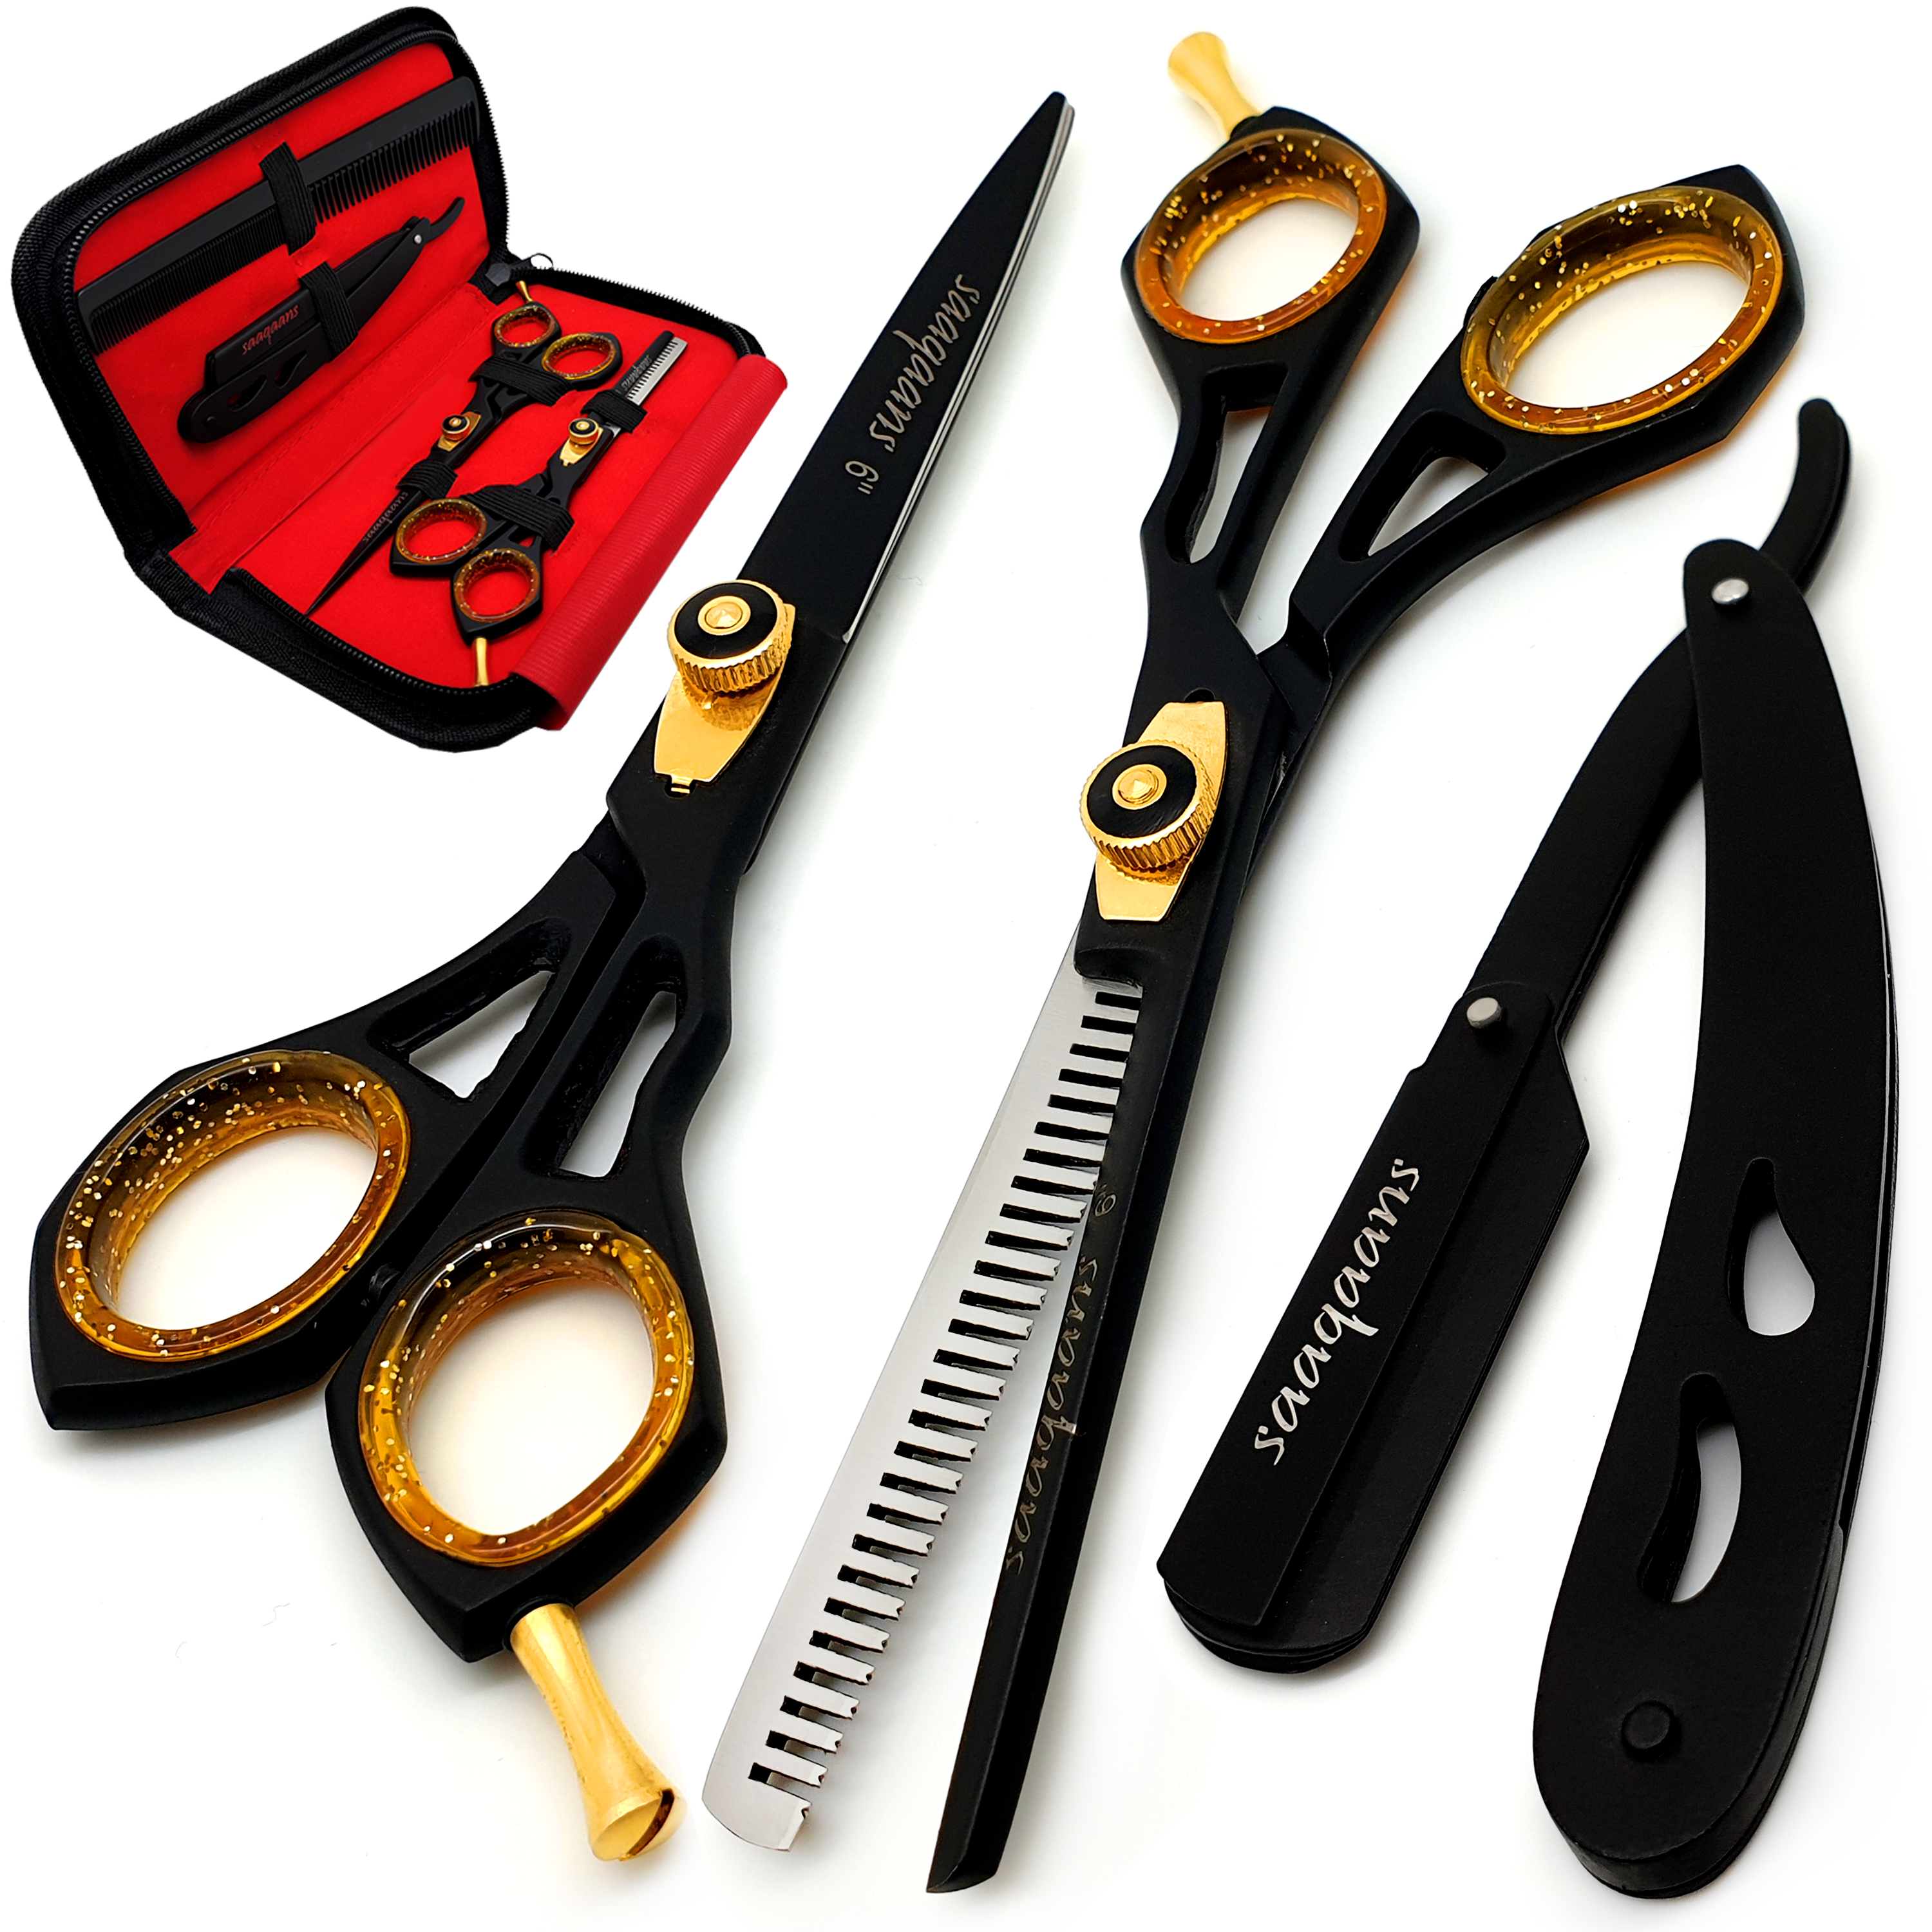 hairdressing scissors kit